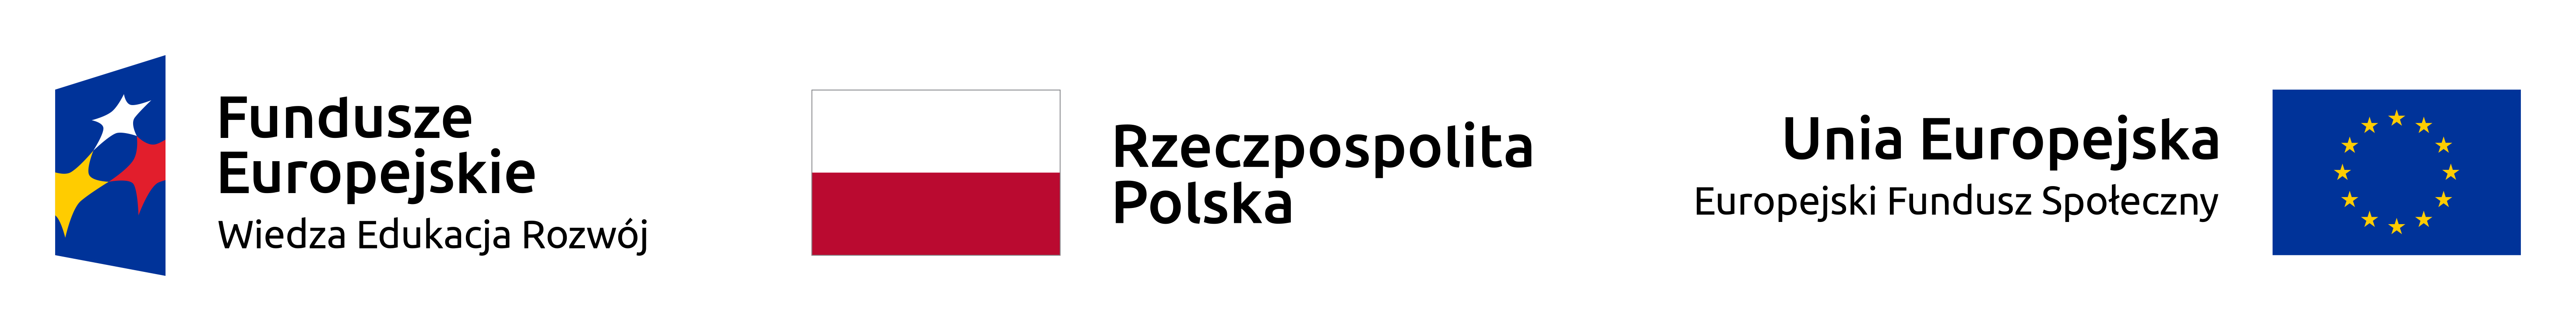 loga Fundusze Europejskie Wiedza Edukacja Rozwój, Rzeczpospolita Polska, promuje łódzkie, Unia Europejska Europejski Fundusz Społeczny